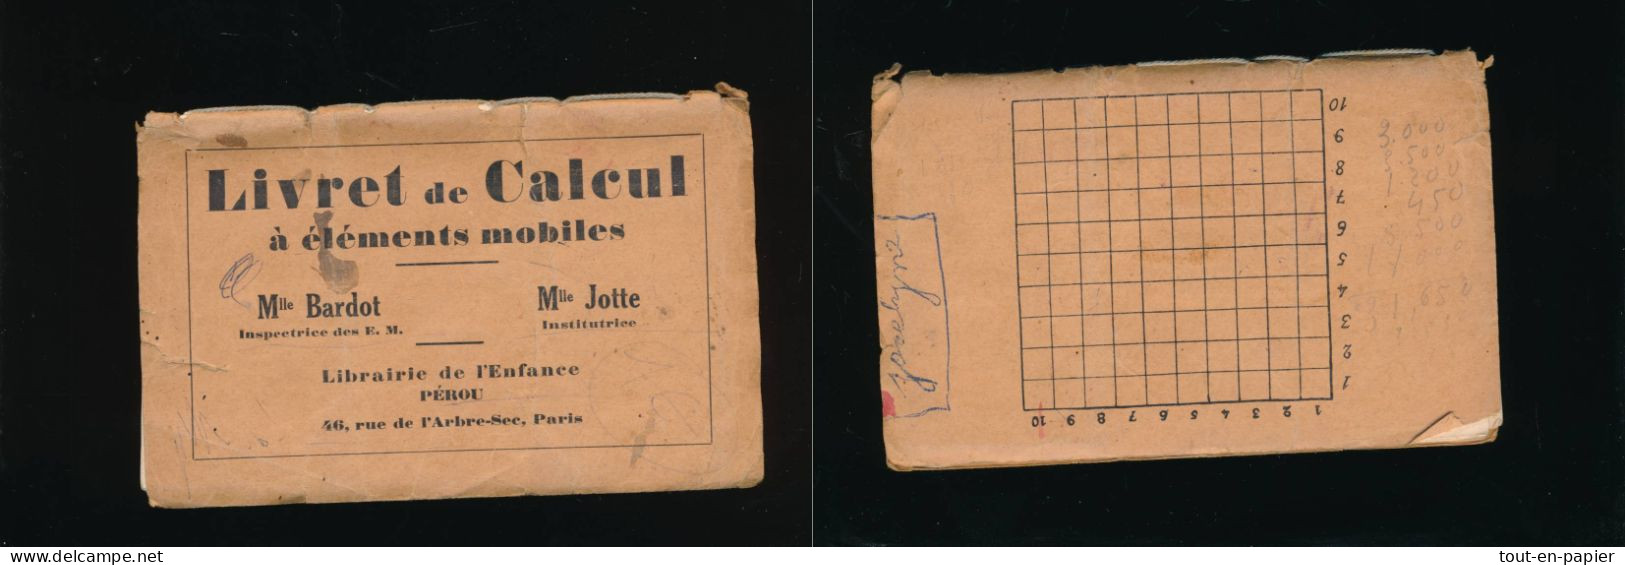 Livret De Calcul à éléments Mobiles Librairie De L'enfance Pérou Paris - Melle Jotte Institutrice - Jugetes Antiguos